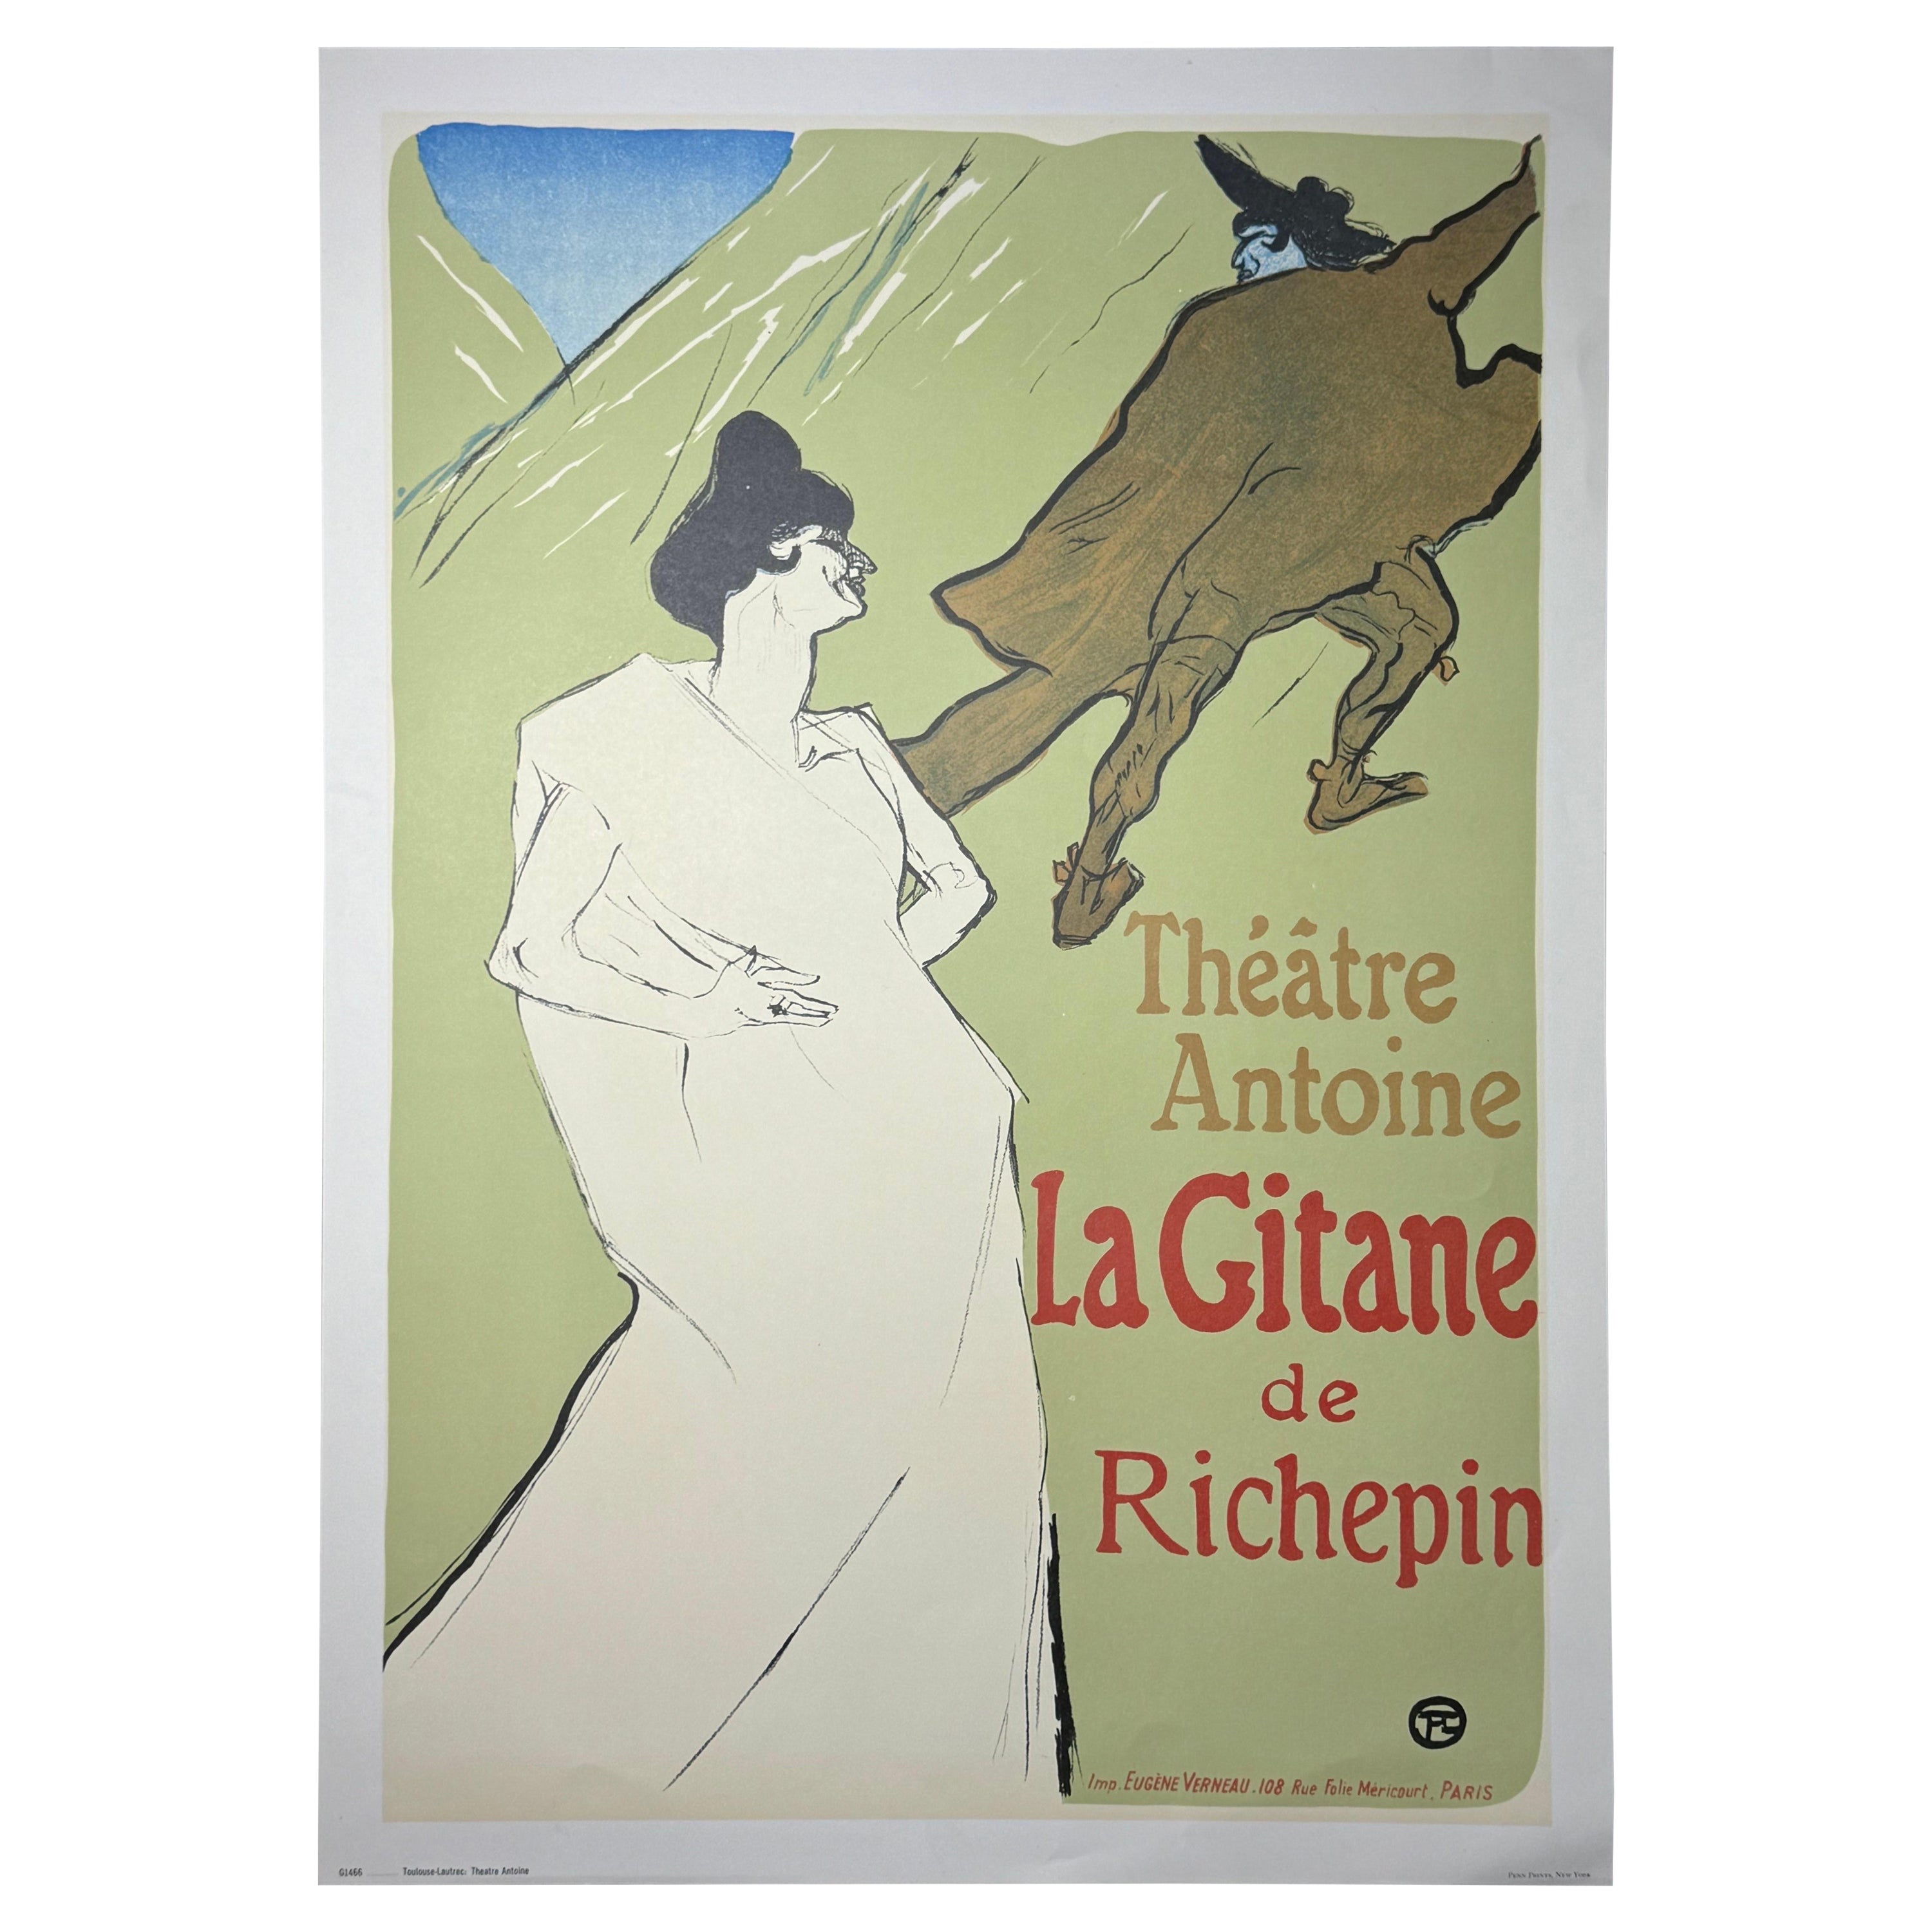 Vintage Henri de Toulouse Lautrec "Theatre Antoine, La Gitane de Richepin" Print